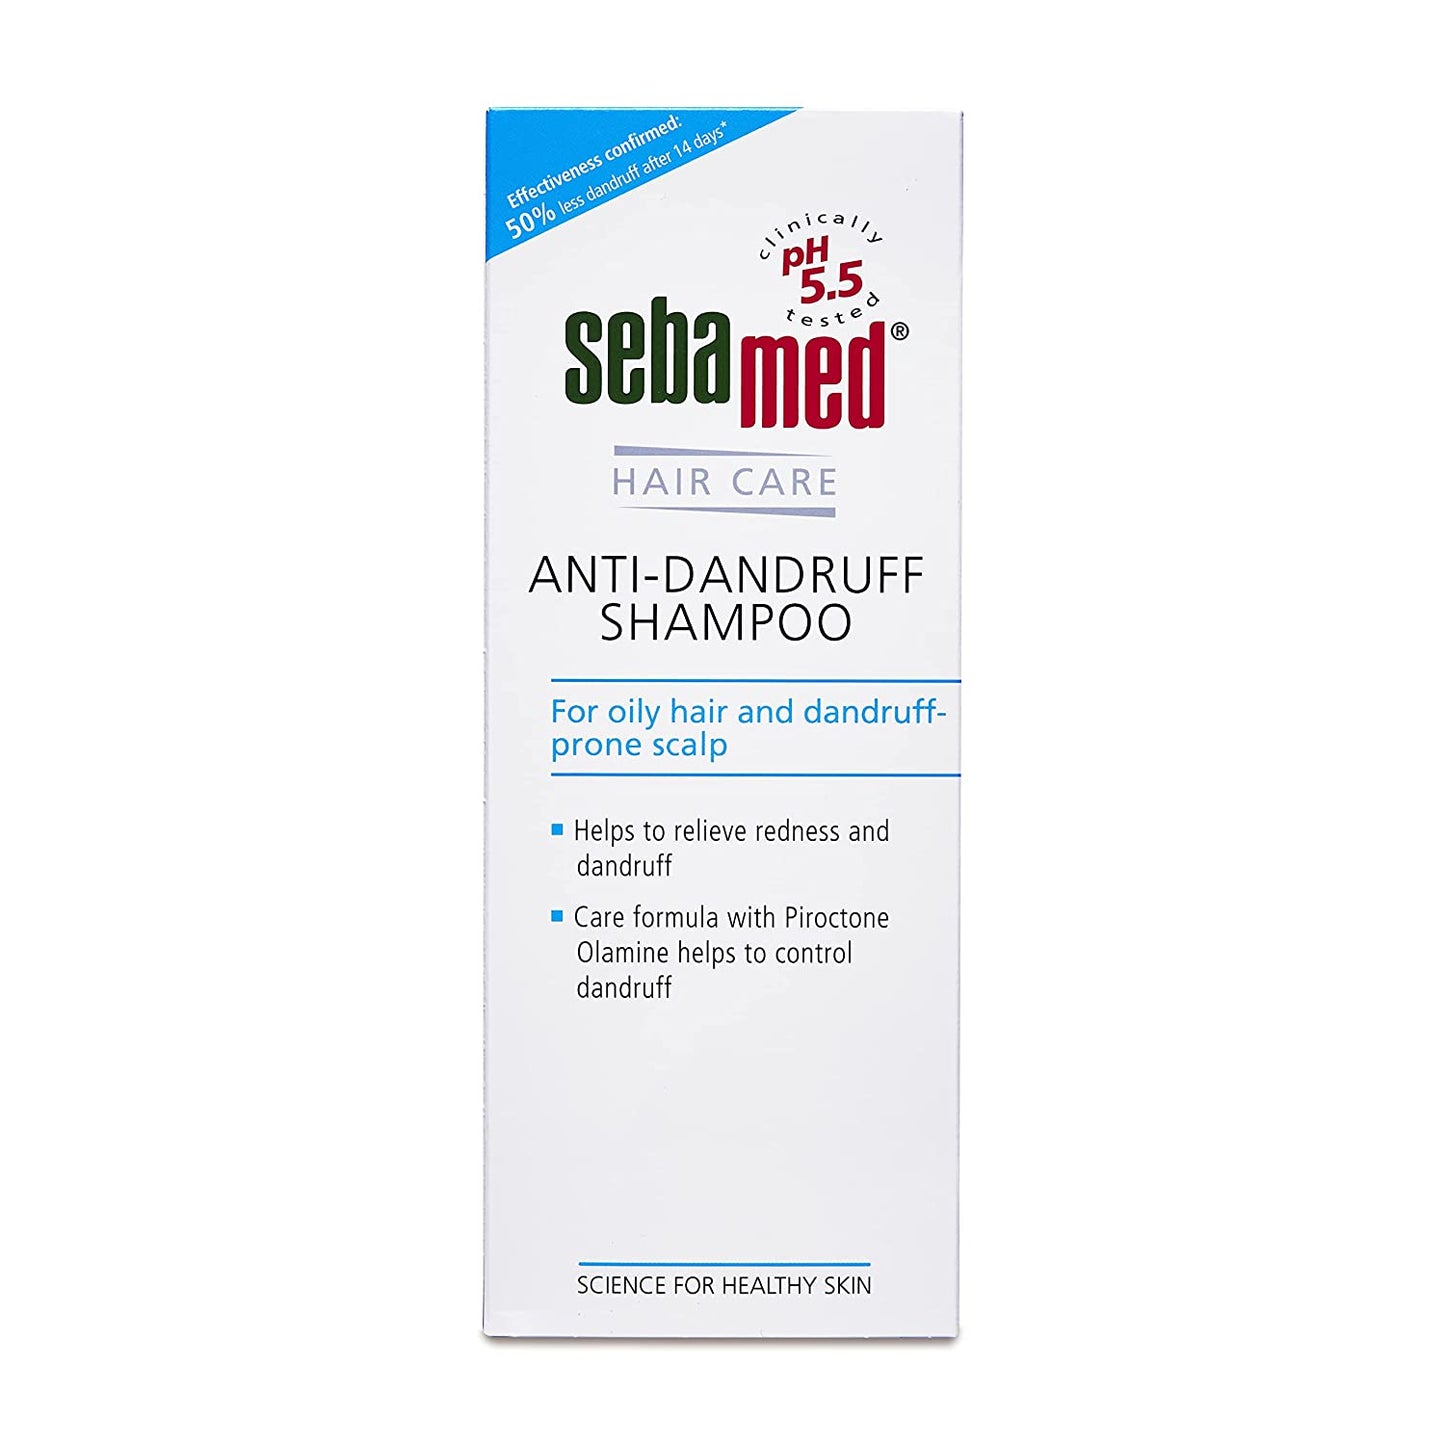 Sebamed Anti-Dandruff Shampoo best for all hair types - 200ml